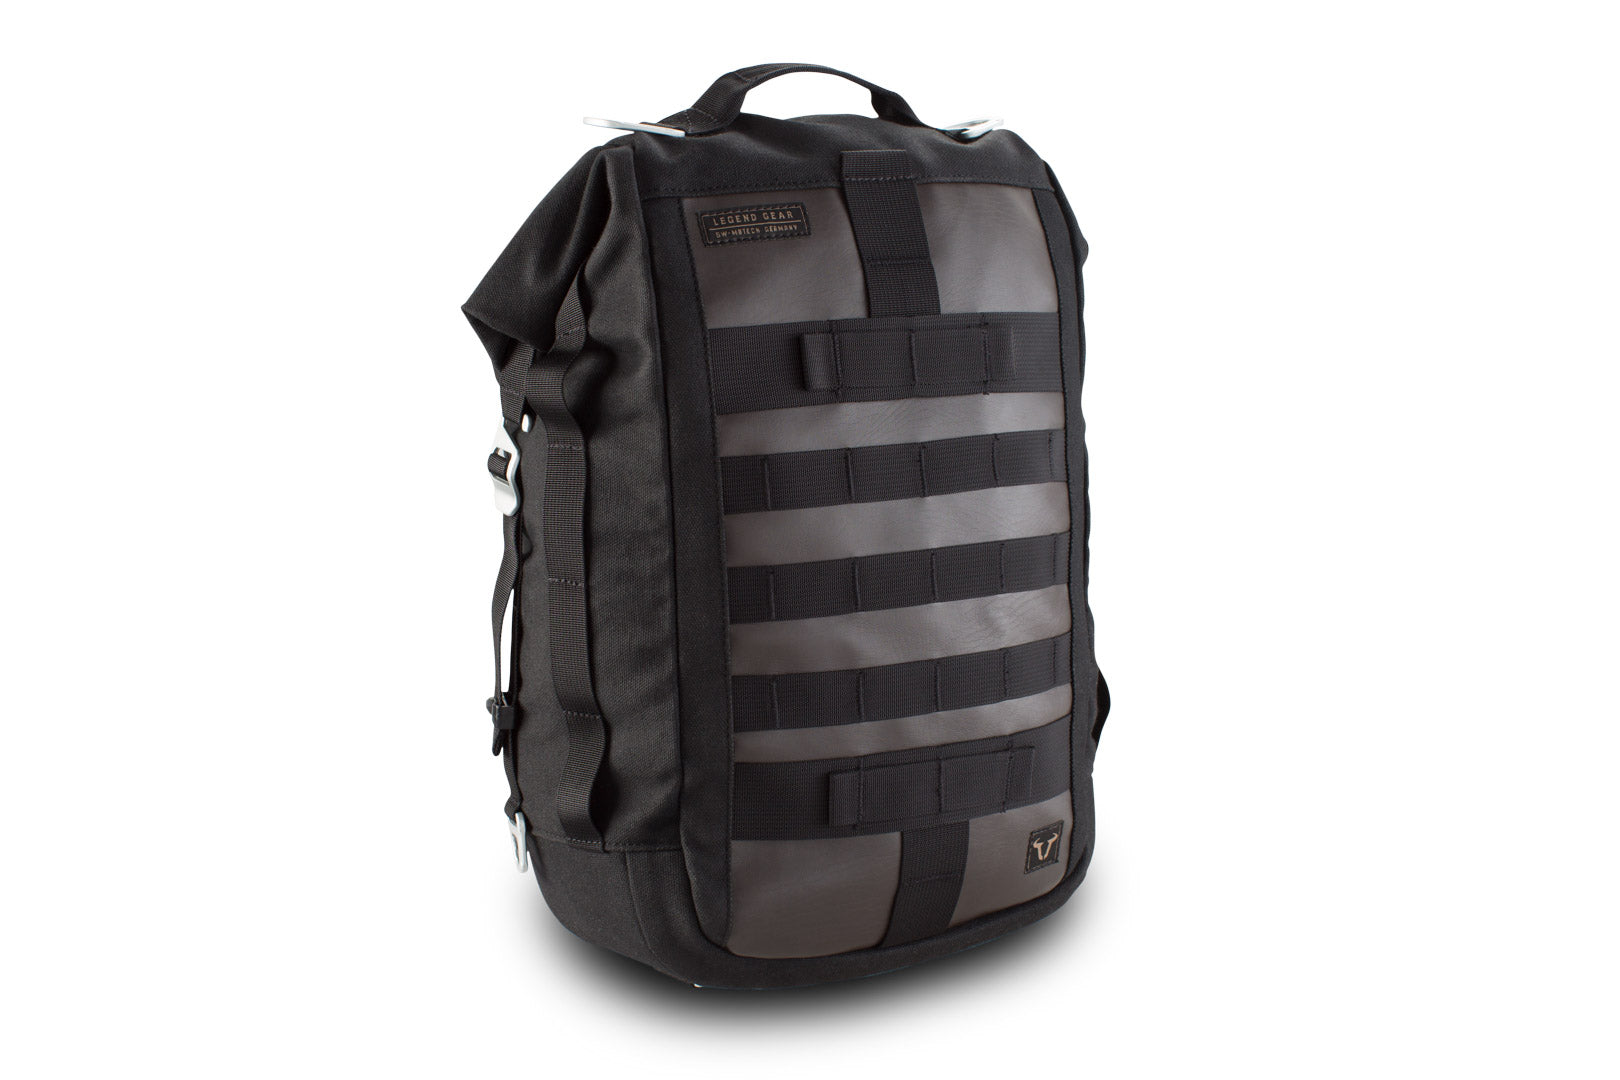 Legend Gear Tail Bag LR1 17.5 litre Backpack function Splash-proof